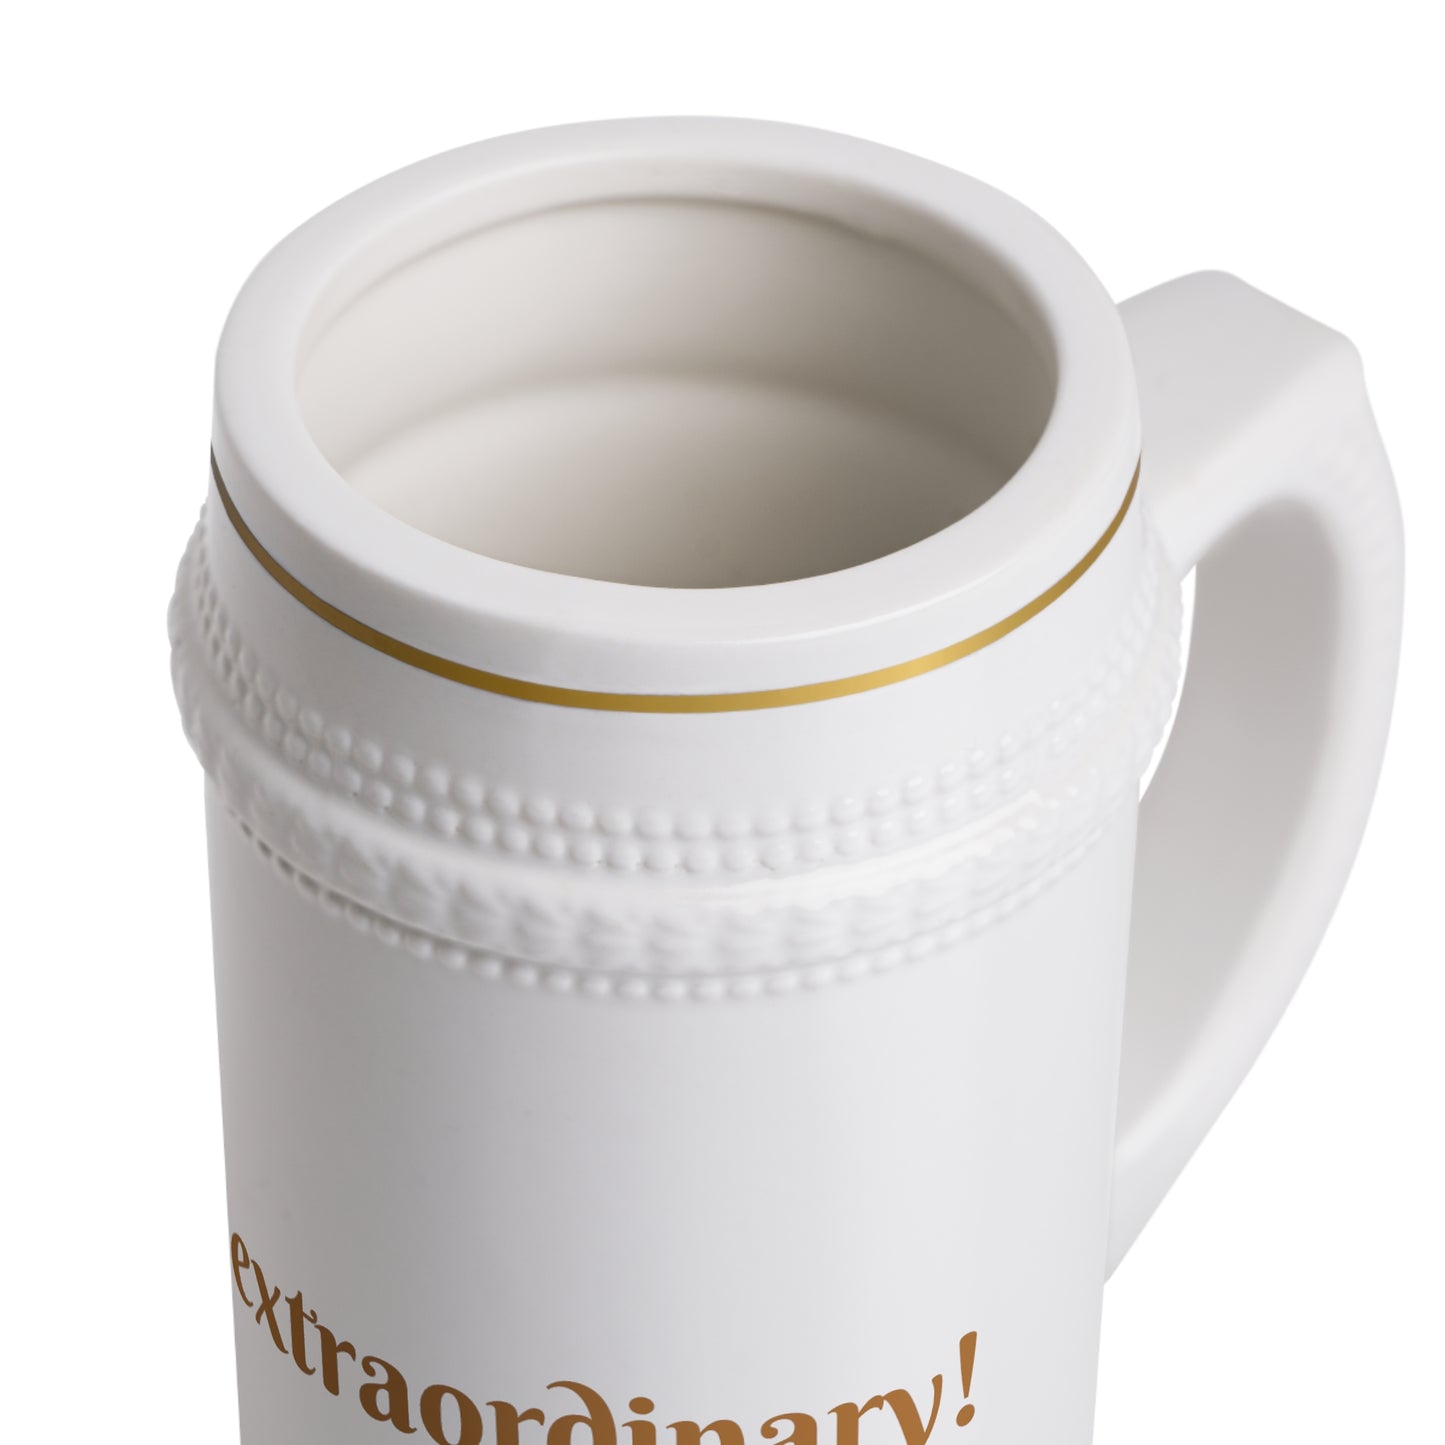 You're extraordinary mug